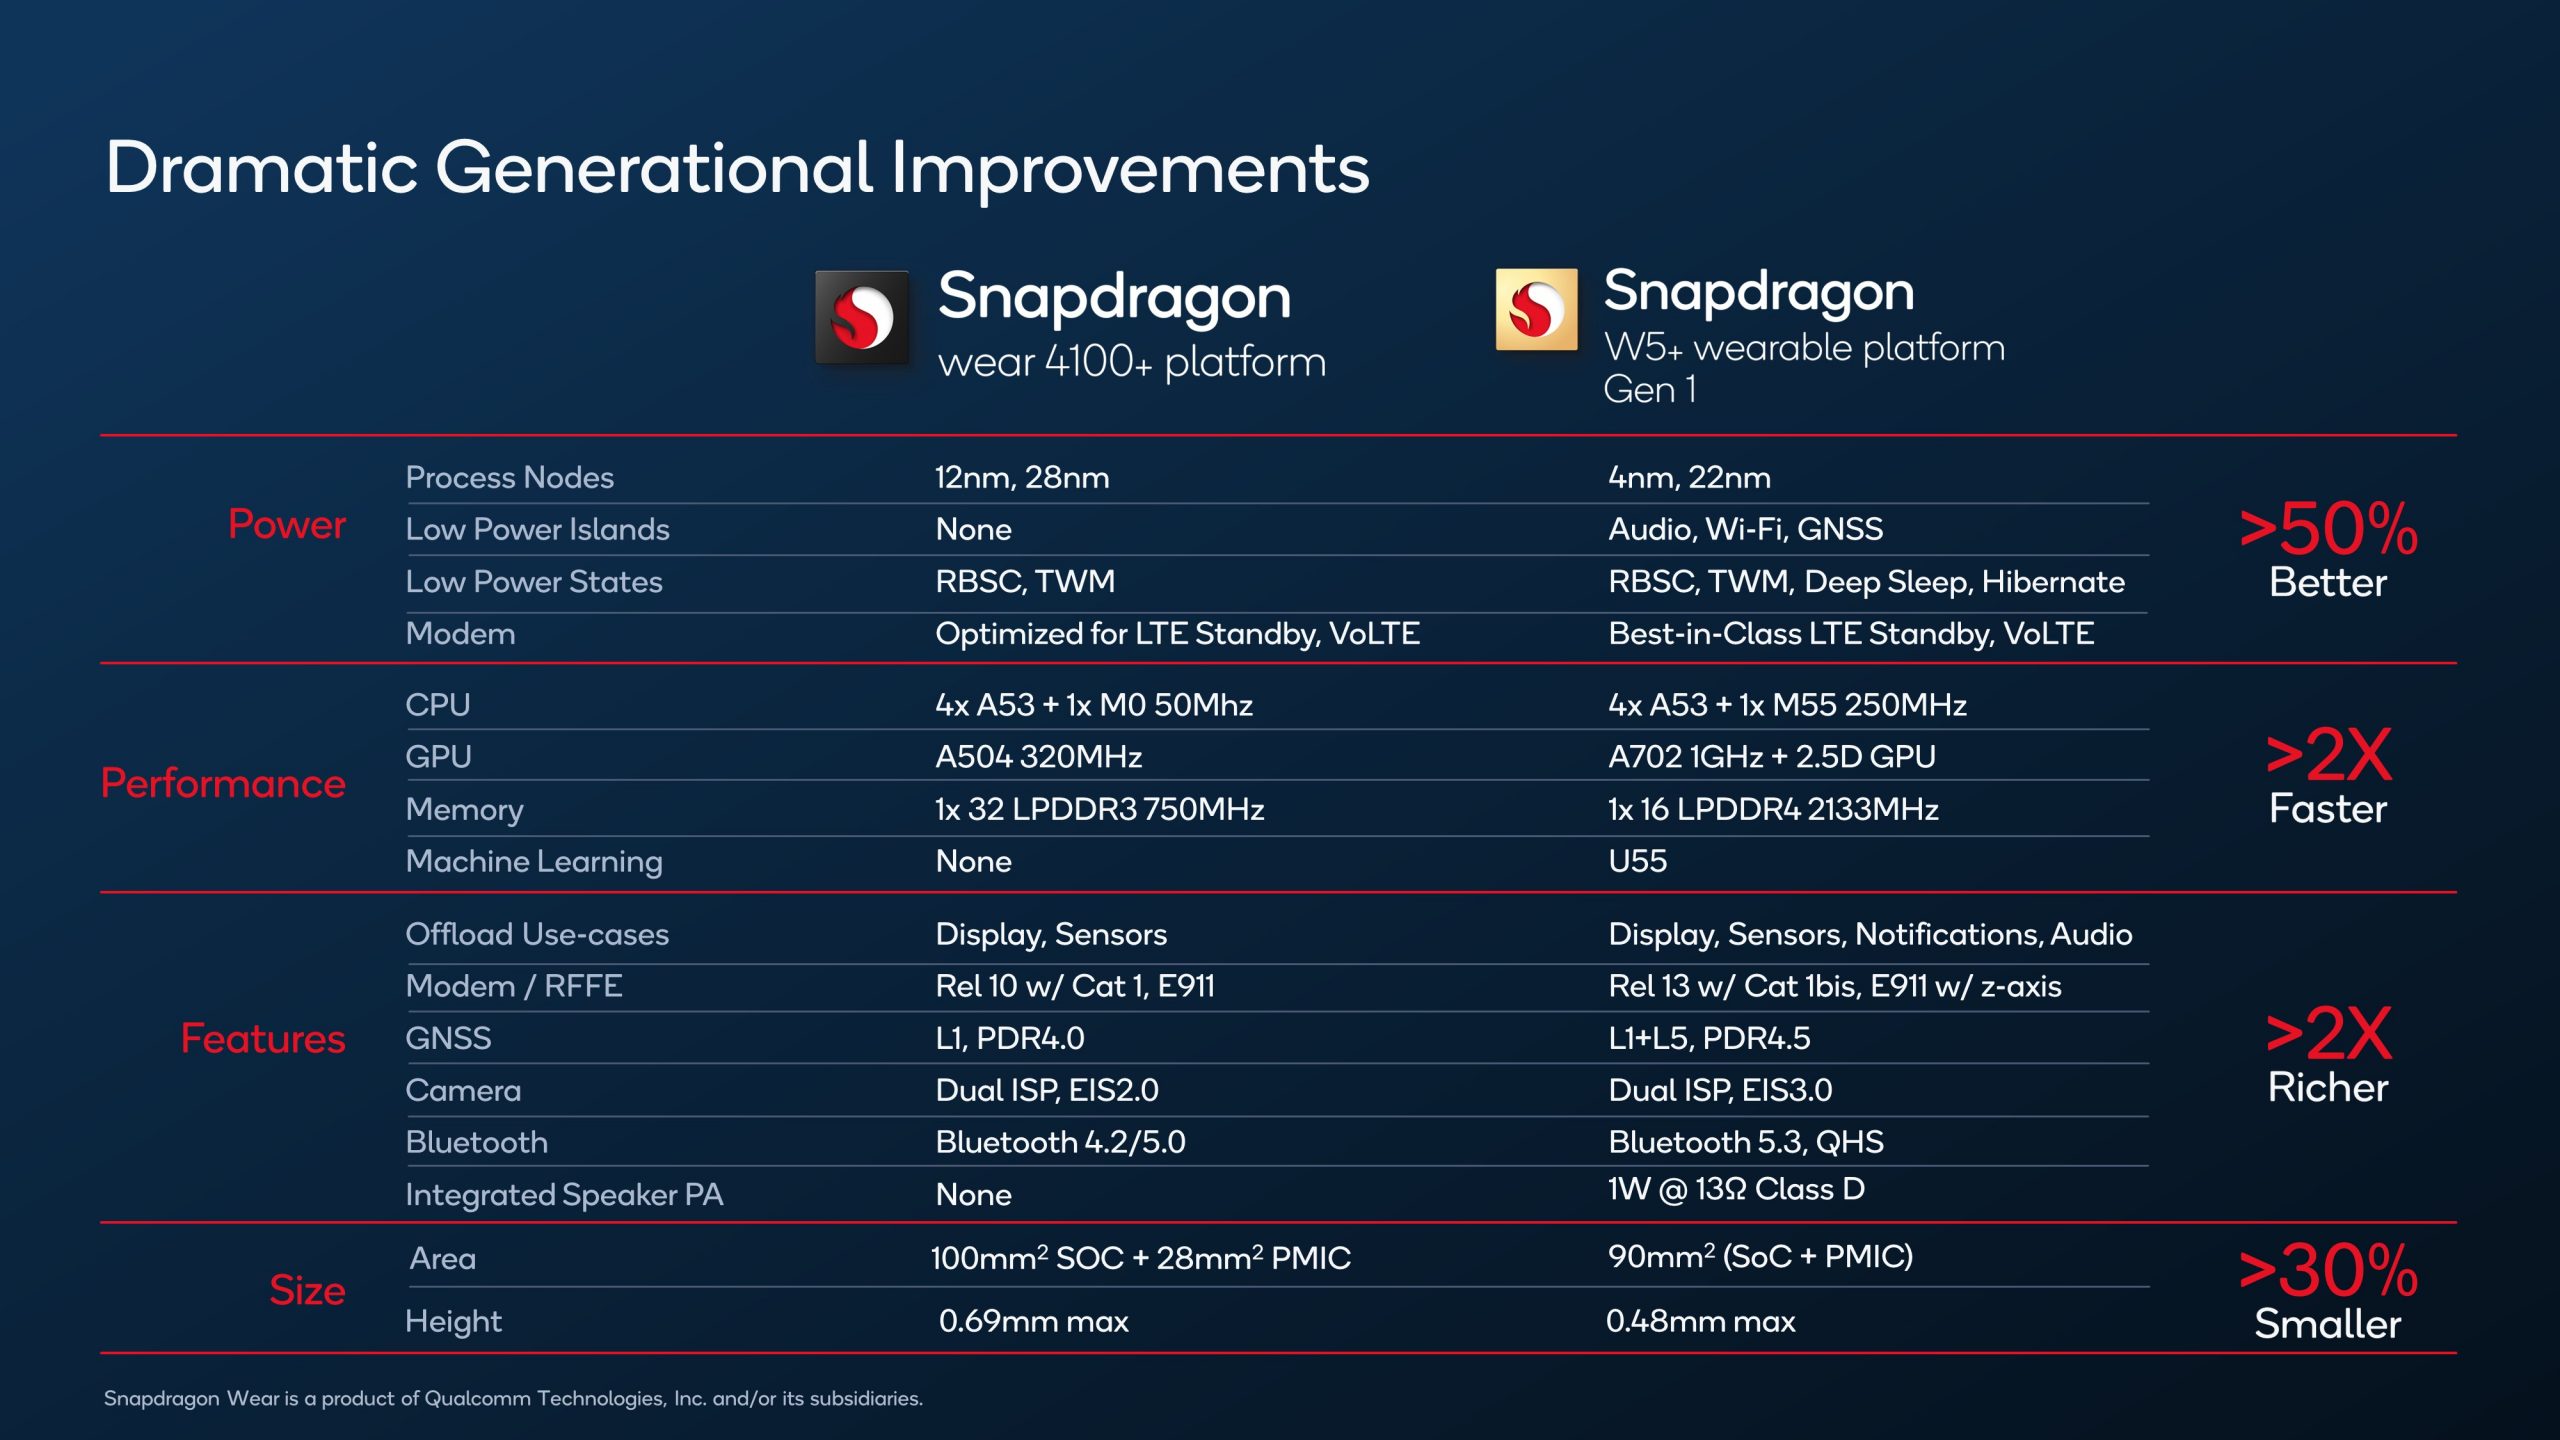 Qualcomm ra mắt nền tảng Snapdragon W5+ và W5 cho thiết bị đeo thế hệ tiếp theo